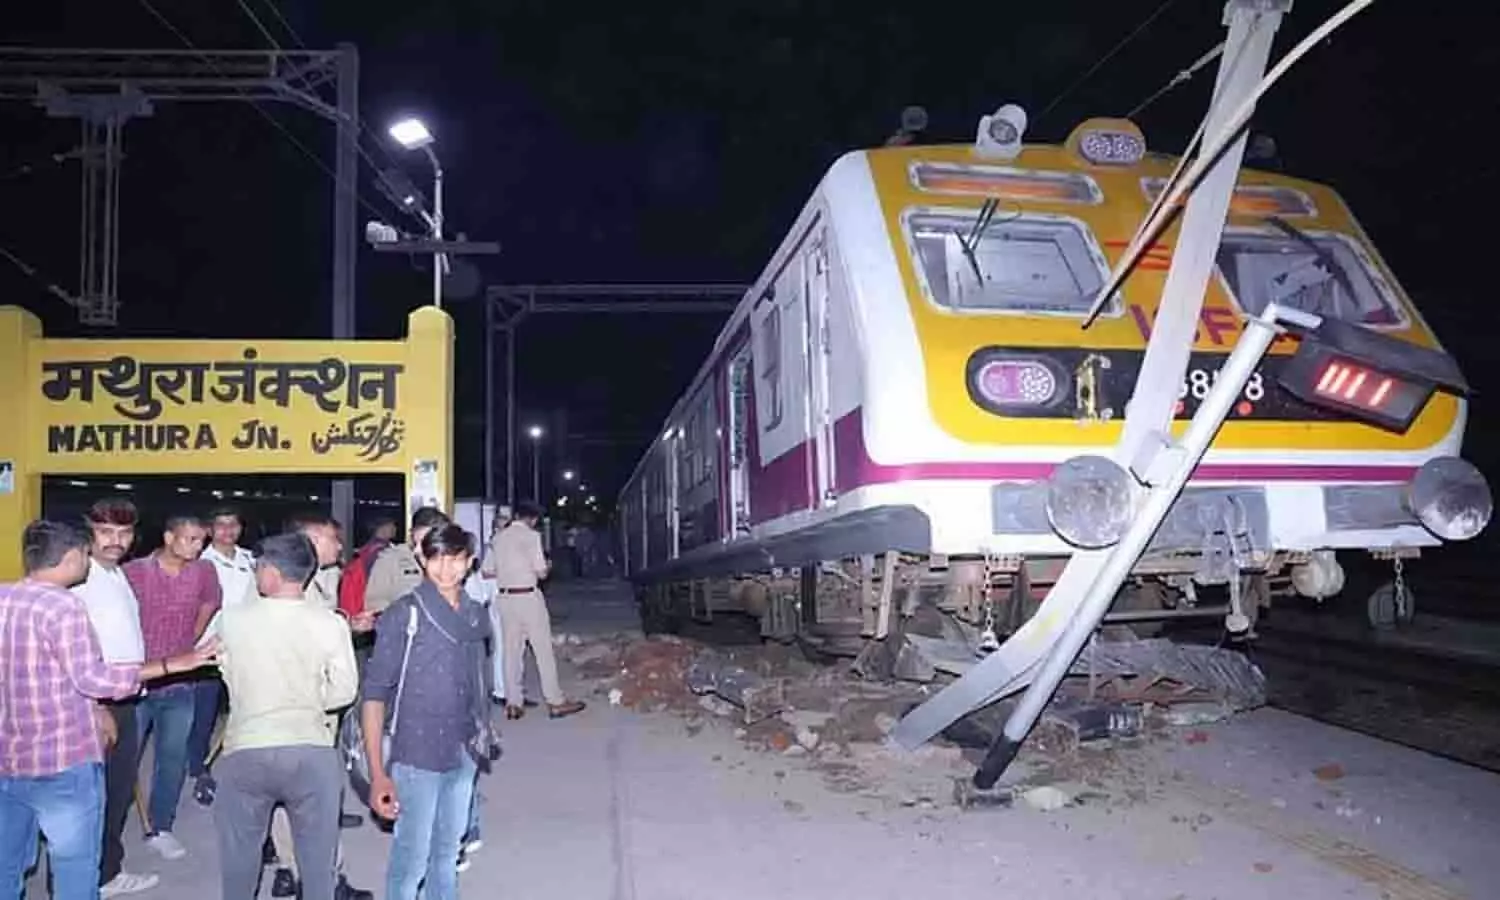 Mathura Train Accident Today Live Update: नशे में मोबाइल देख रहा था कर्मी, जाँच से हुआ बड़ा खुलासा